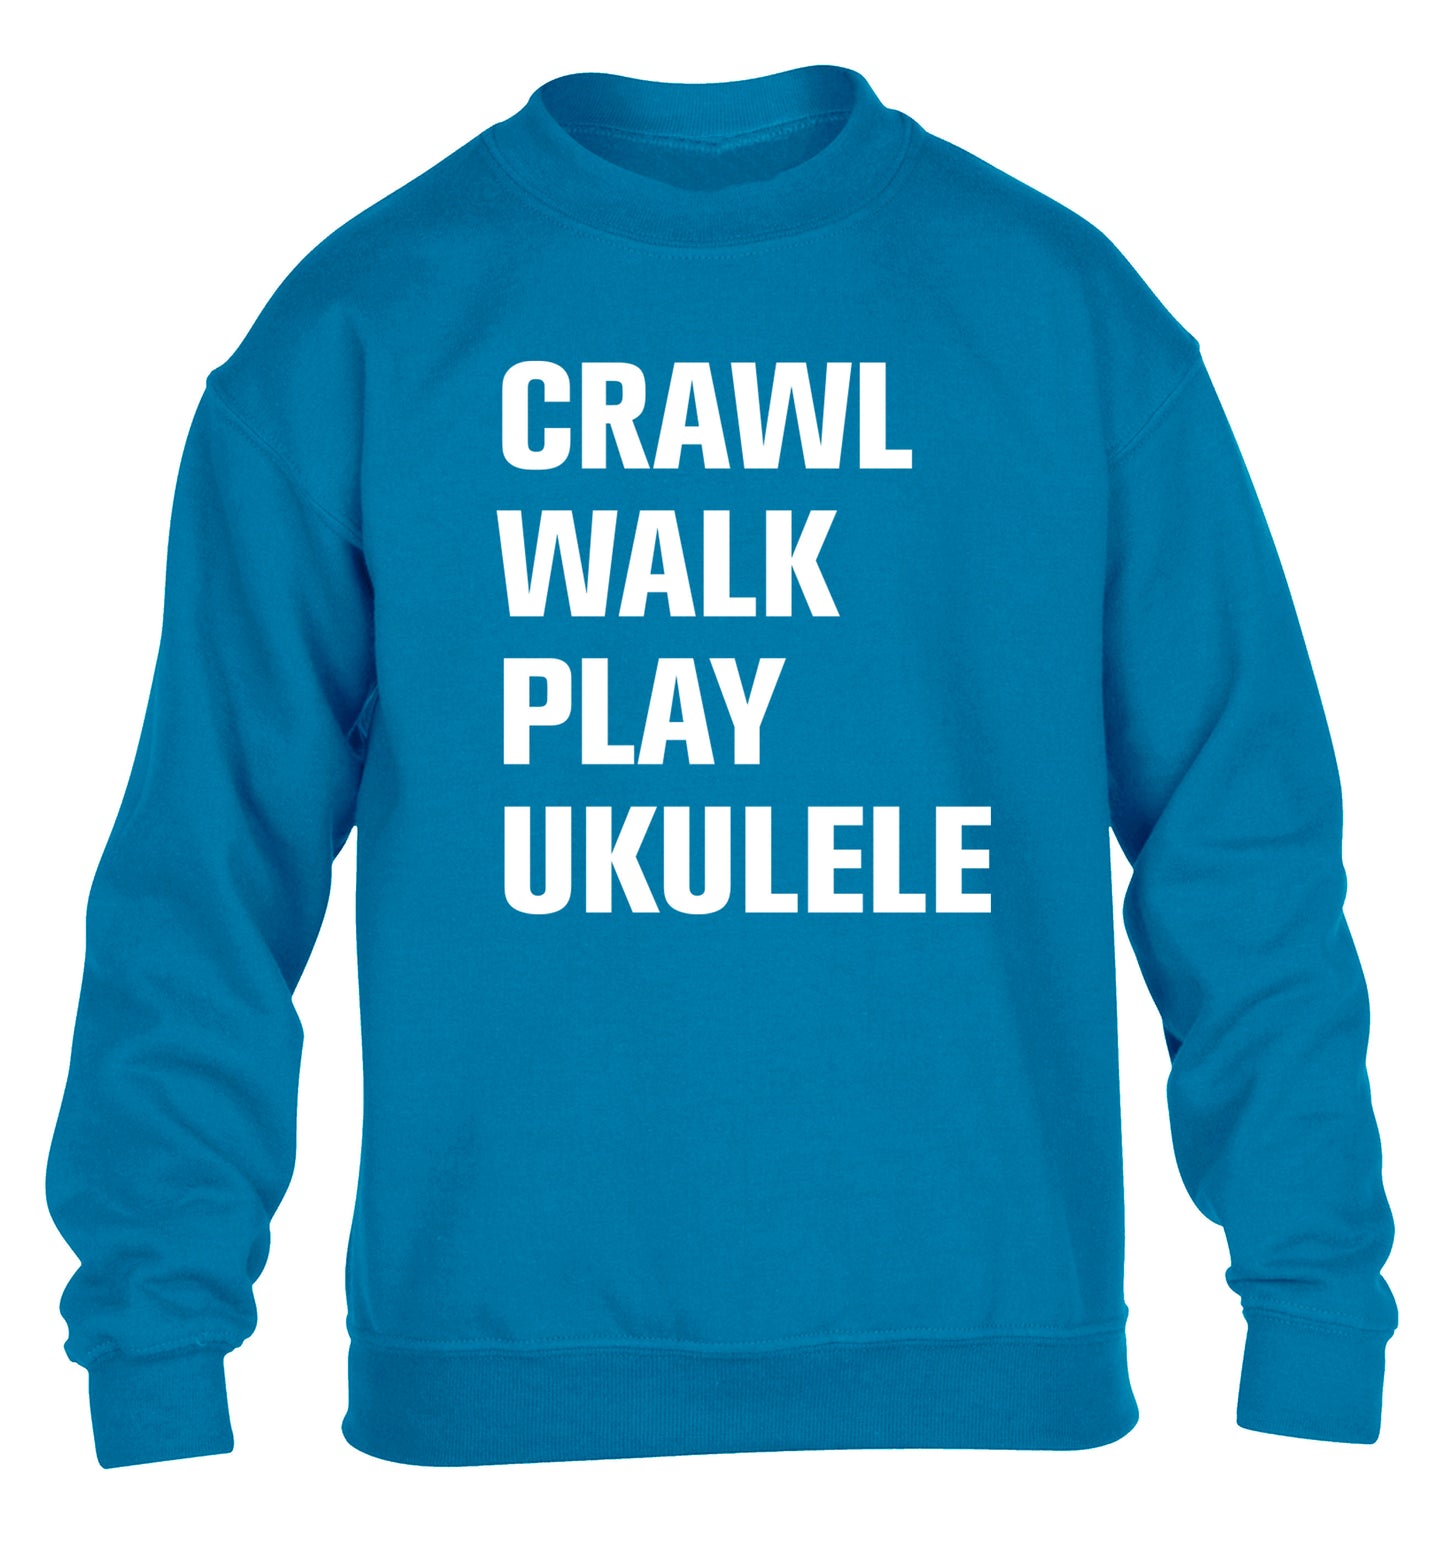 Crawl walk play ukulele children's blue sweater 12-13 Years